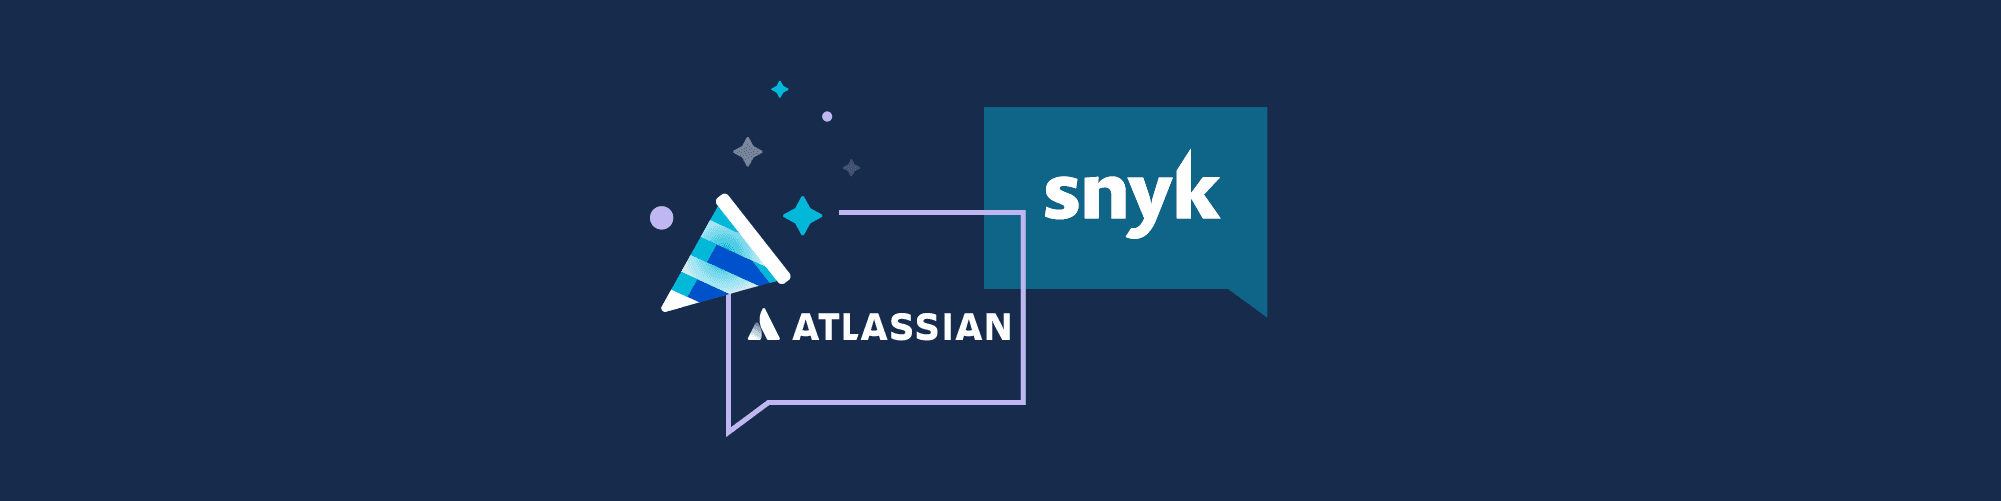 wordpress-sync/blog-banner-atlassian-snyk